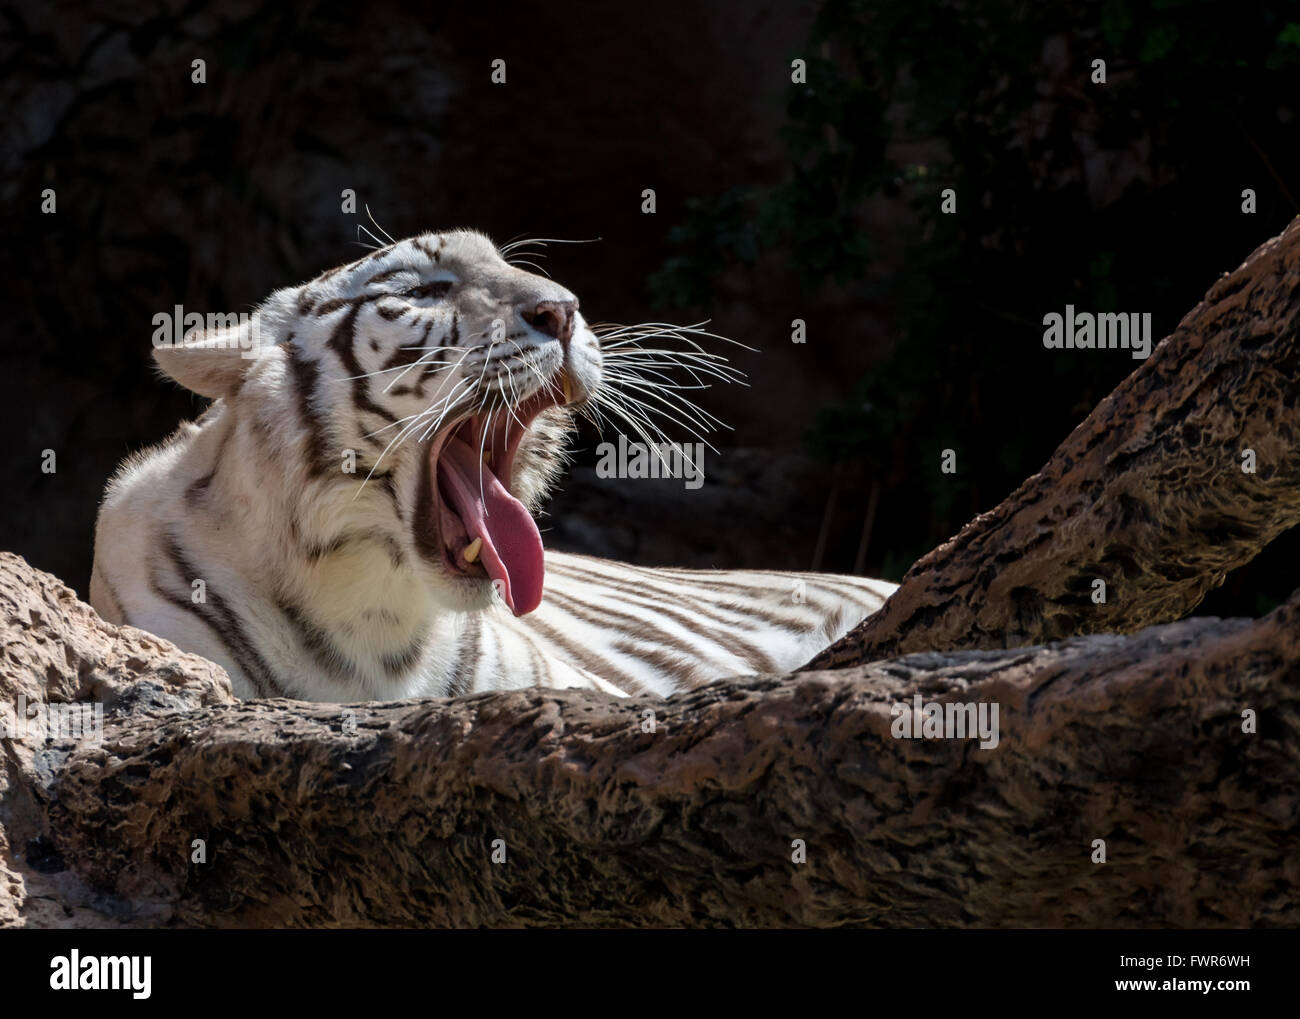 White Bengal Tiger yawning Stock Photo